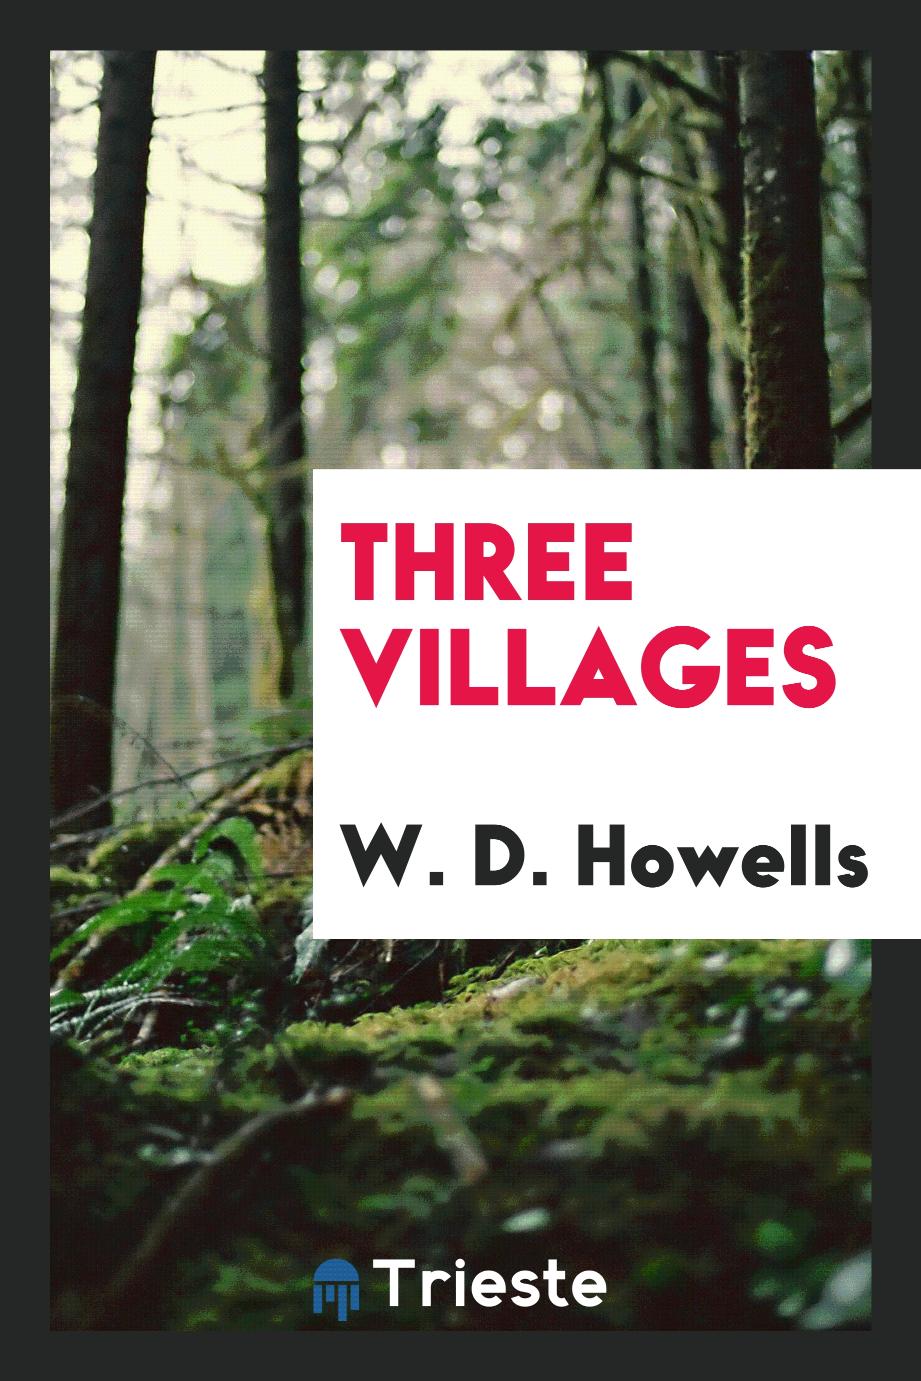 Three villages